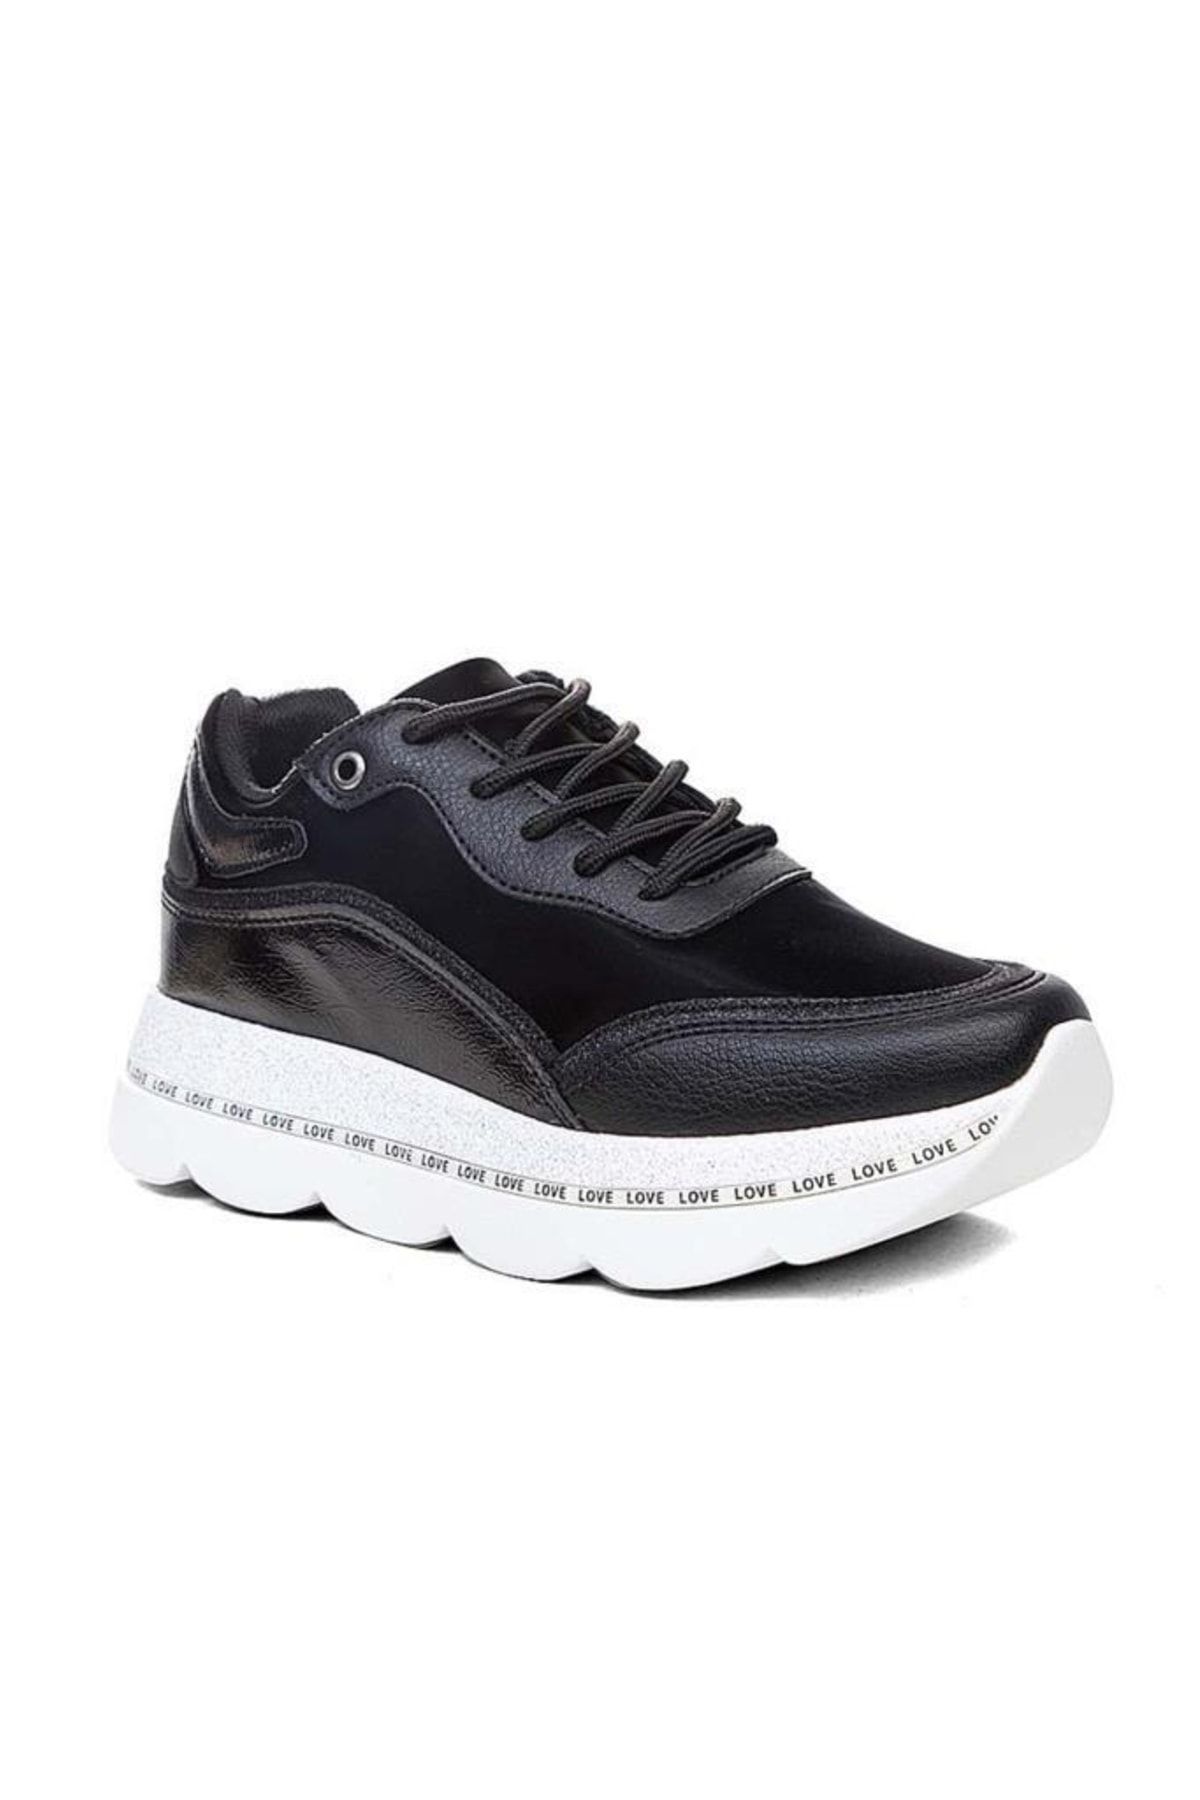 Flet 103 Deri Trend Fashion Kadın Sneakers Ayakkabı Siyah Beyaz